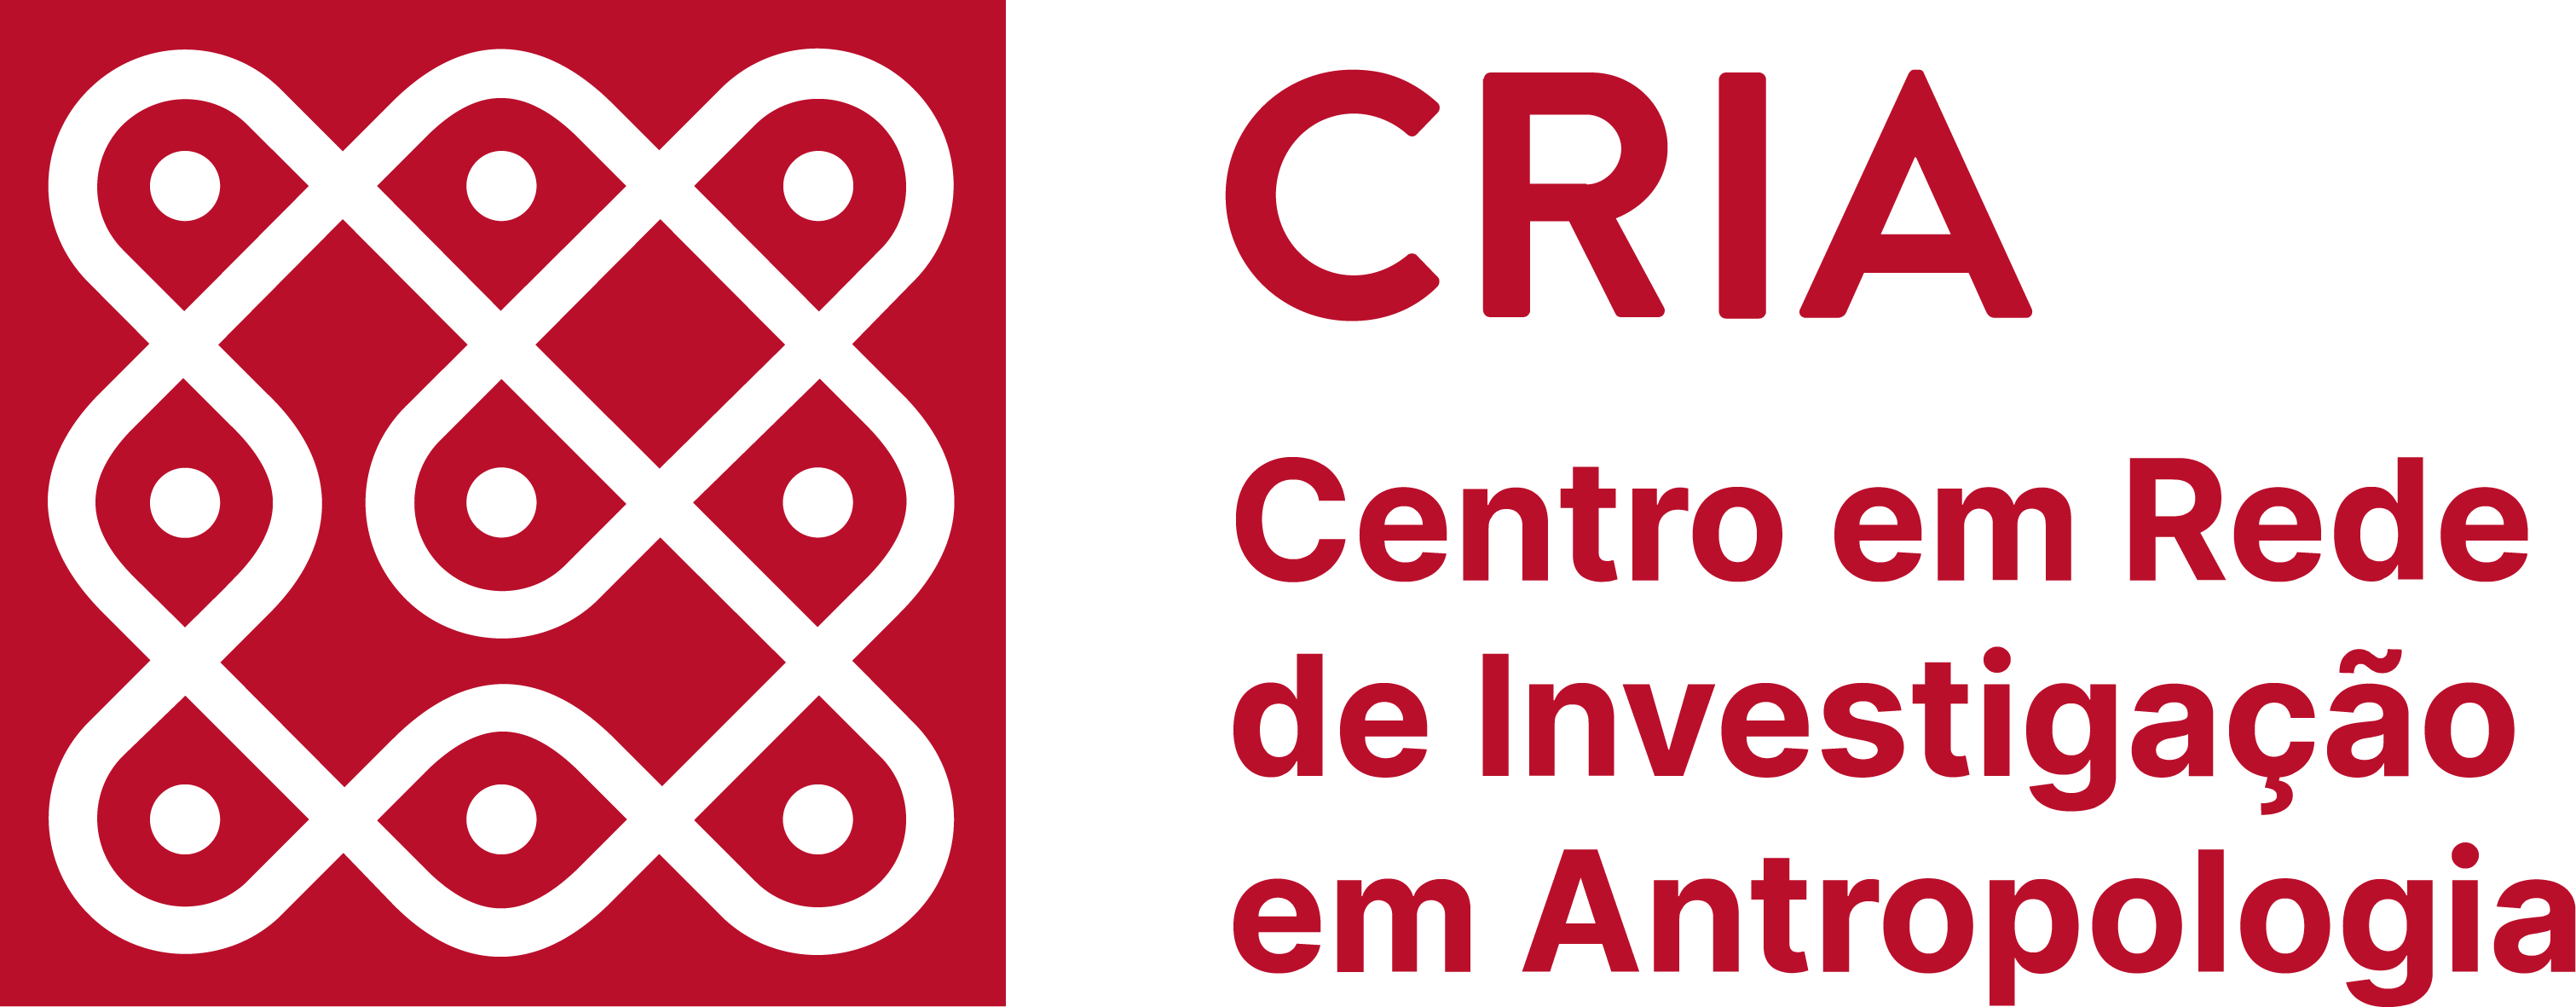 CRIA - Centro em Rede de Investigação em Antropologia